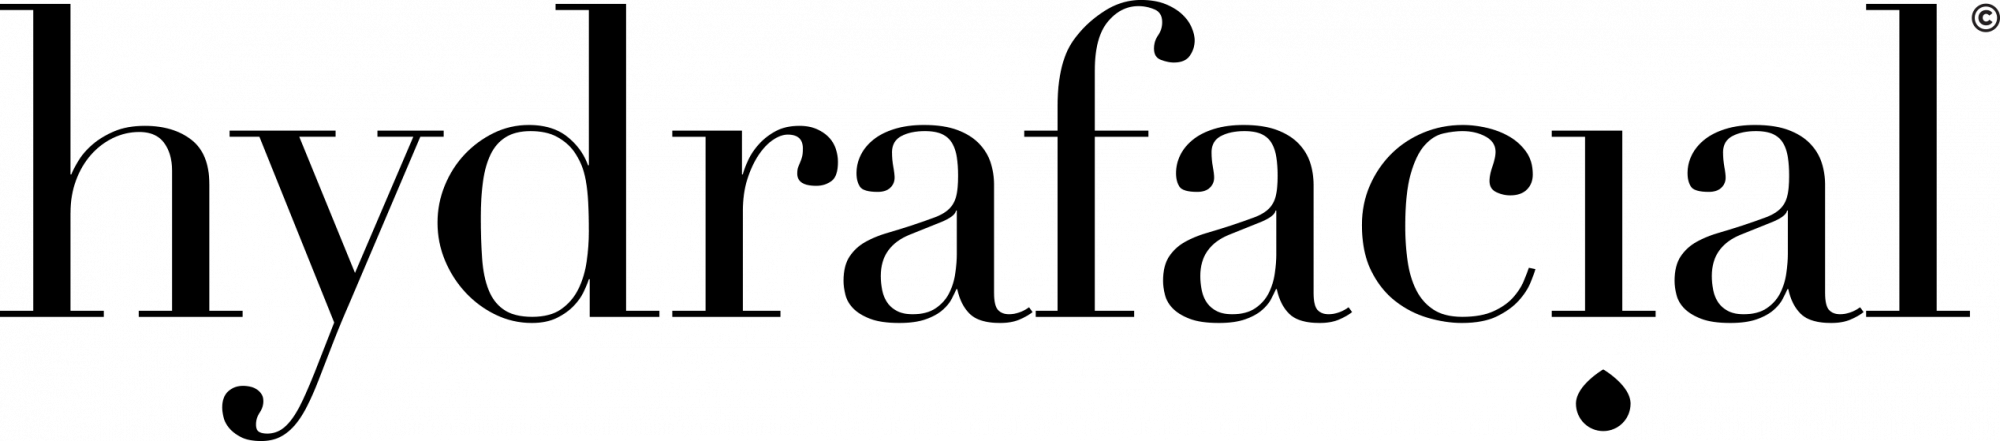 HydraFacial - logo